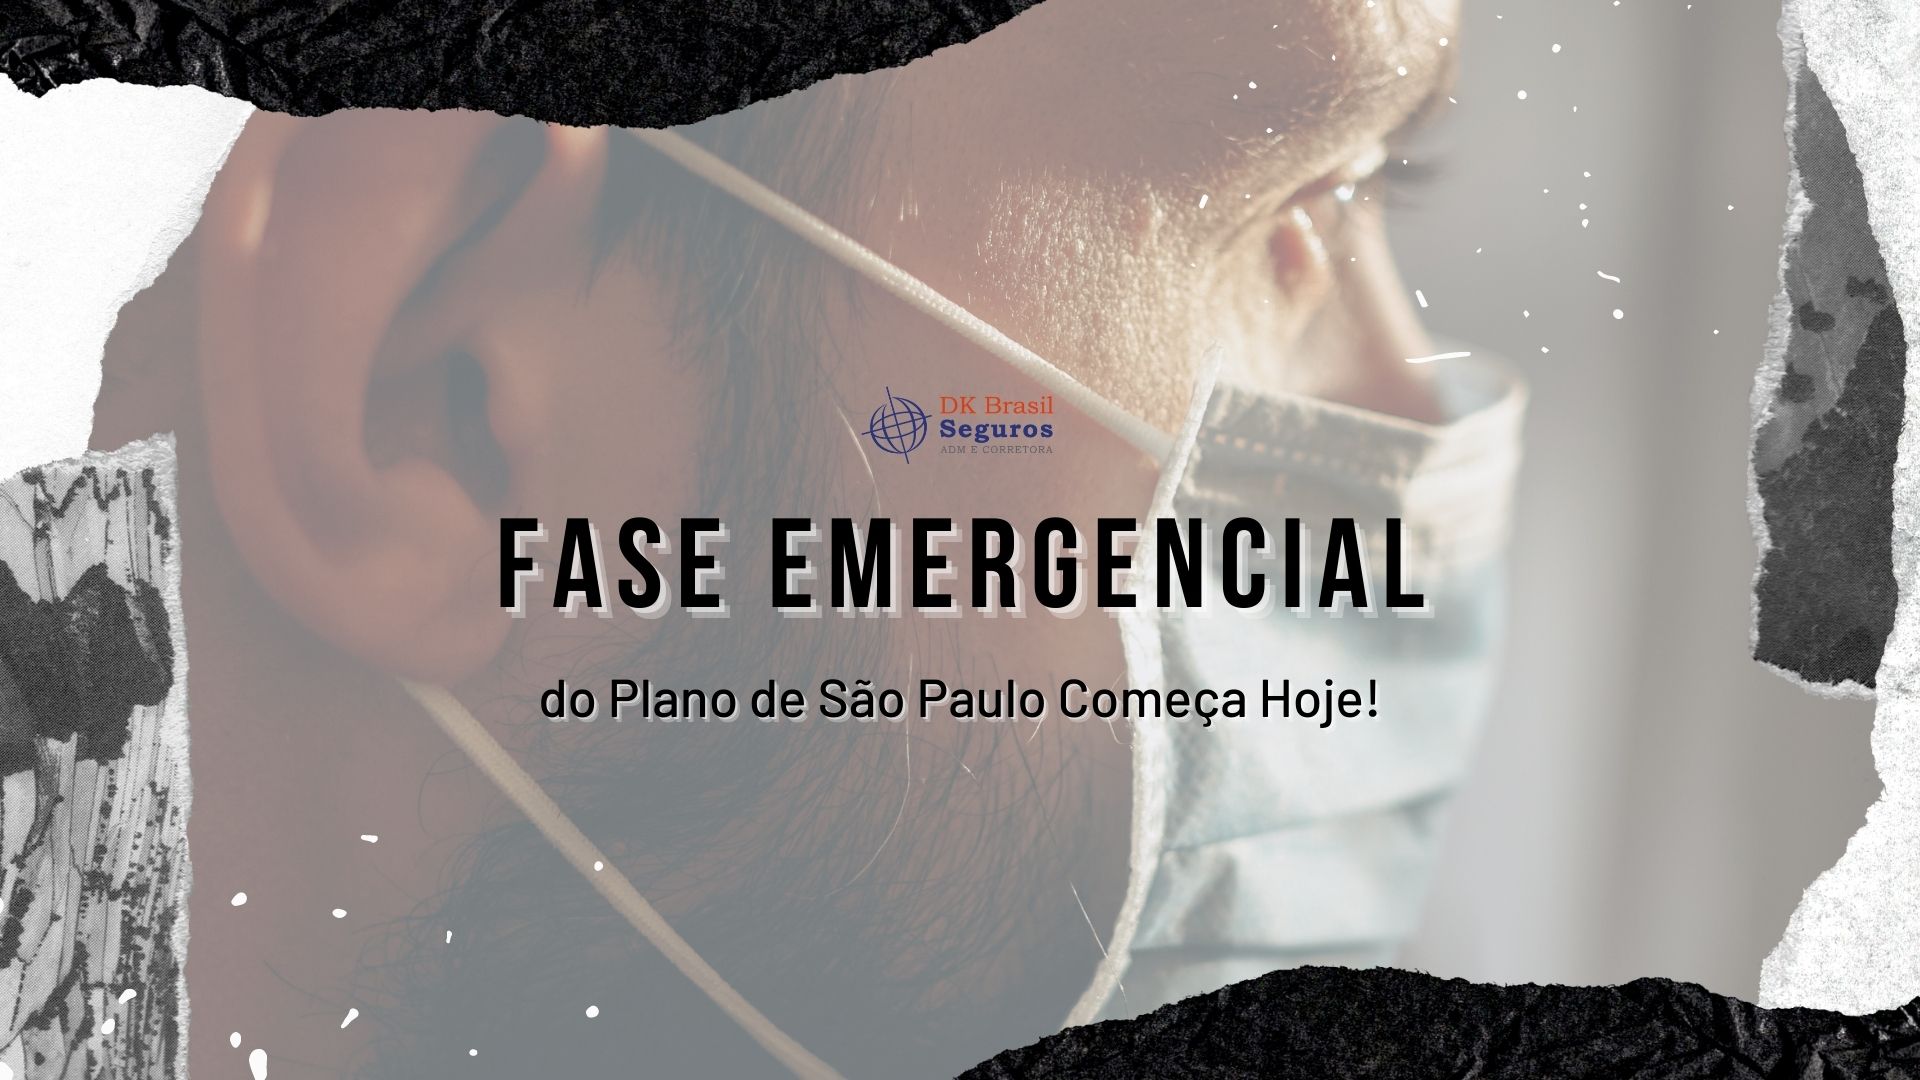 Fase Emergencial do Plano de São Paulo Referente ao Covid 19